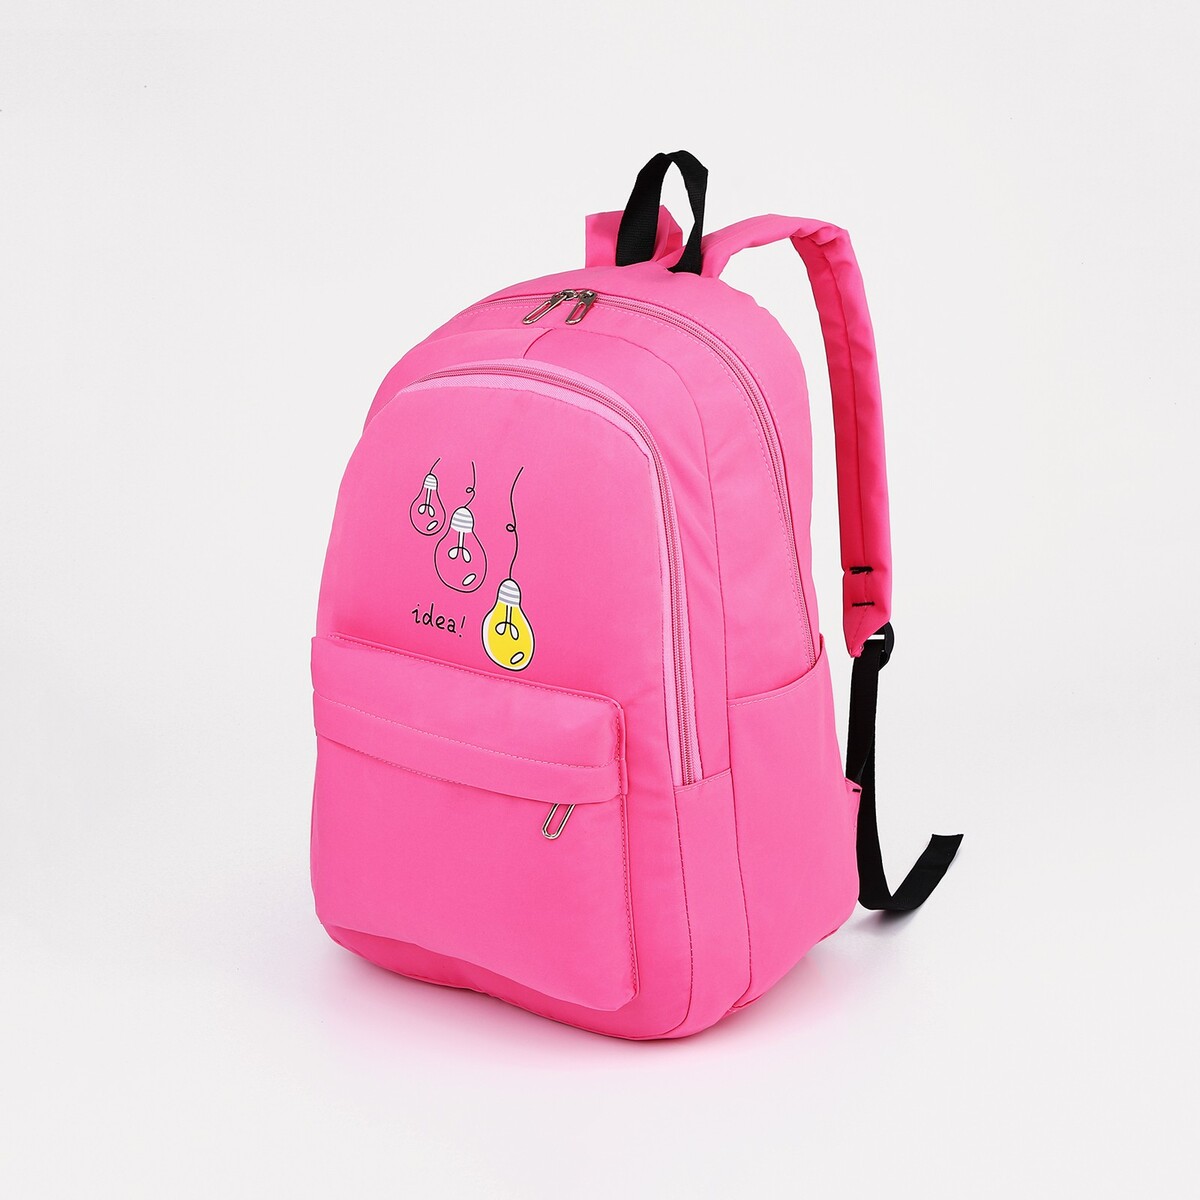 Рюкзак молодежный из текстиля, 2 отдела на молниях, 3 кармана, цвет малиновый рюкзак школьный из текстиля на молнии 2 отдела 3 кармана розовый